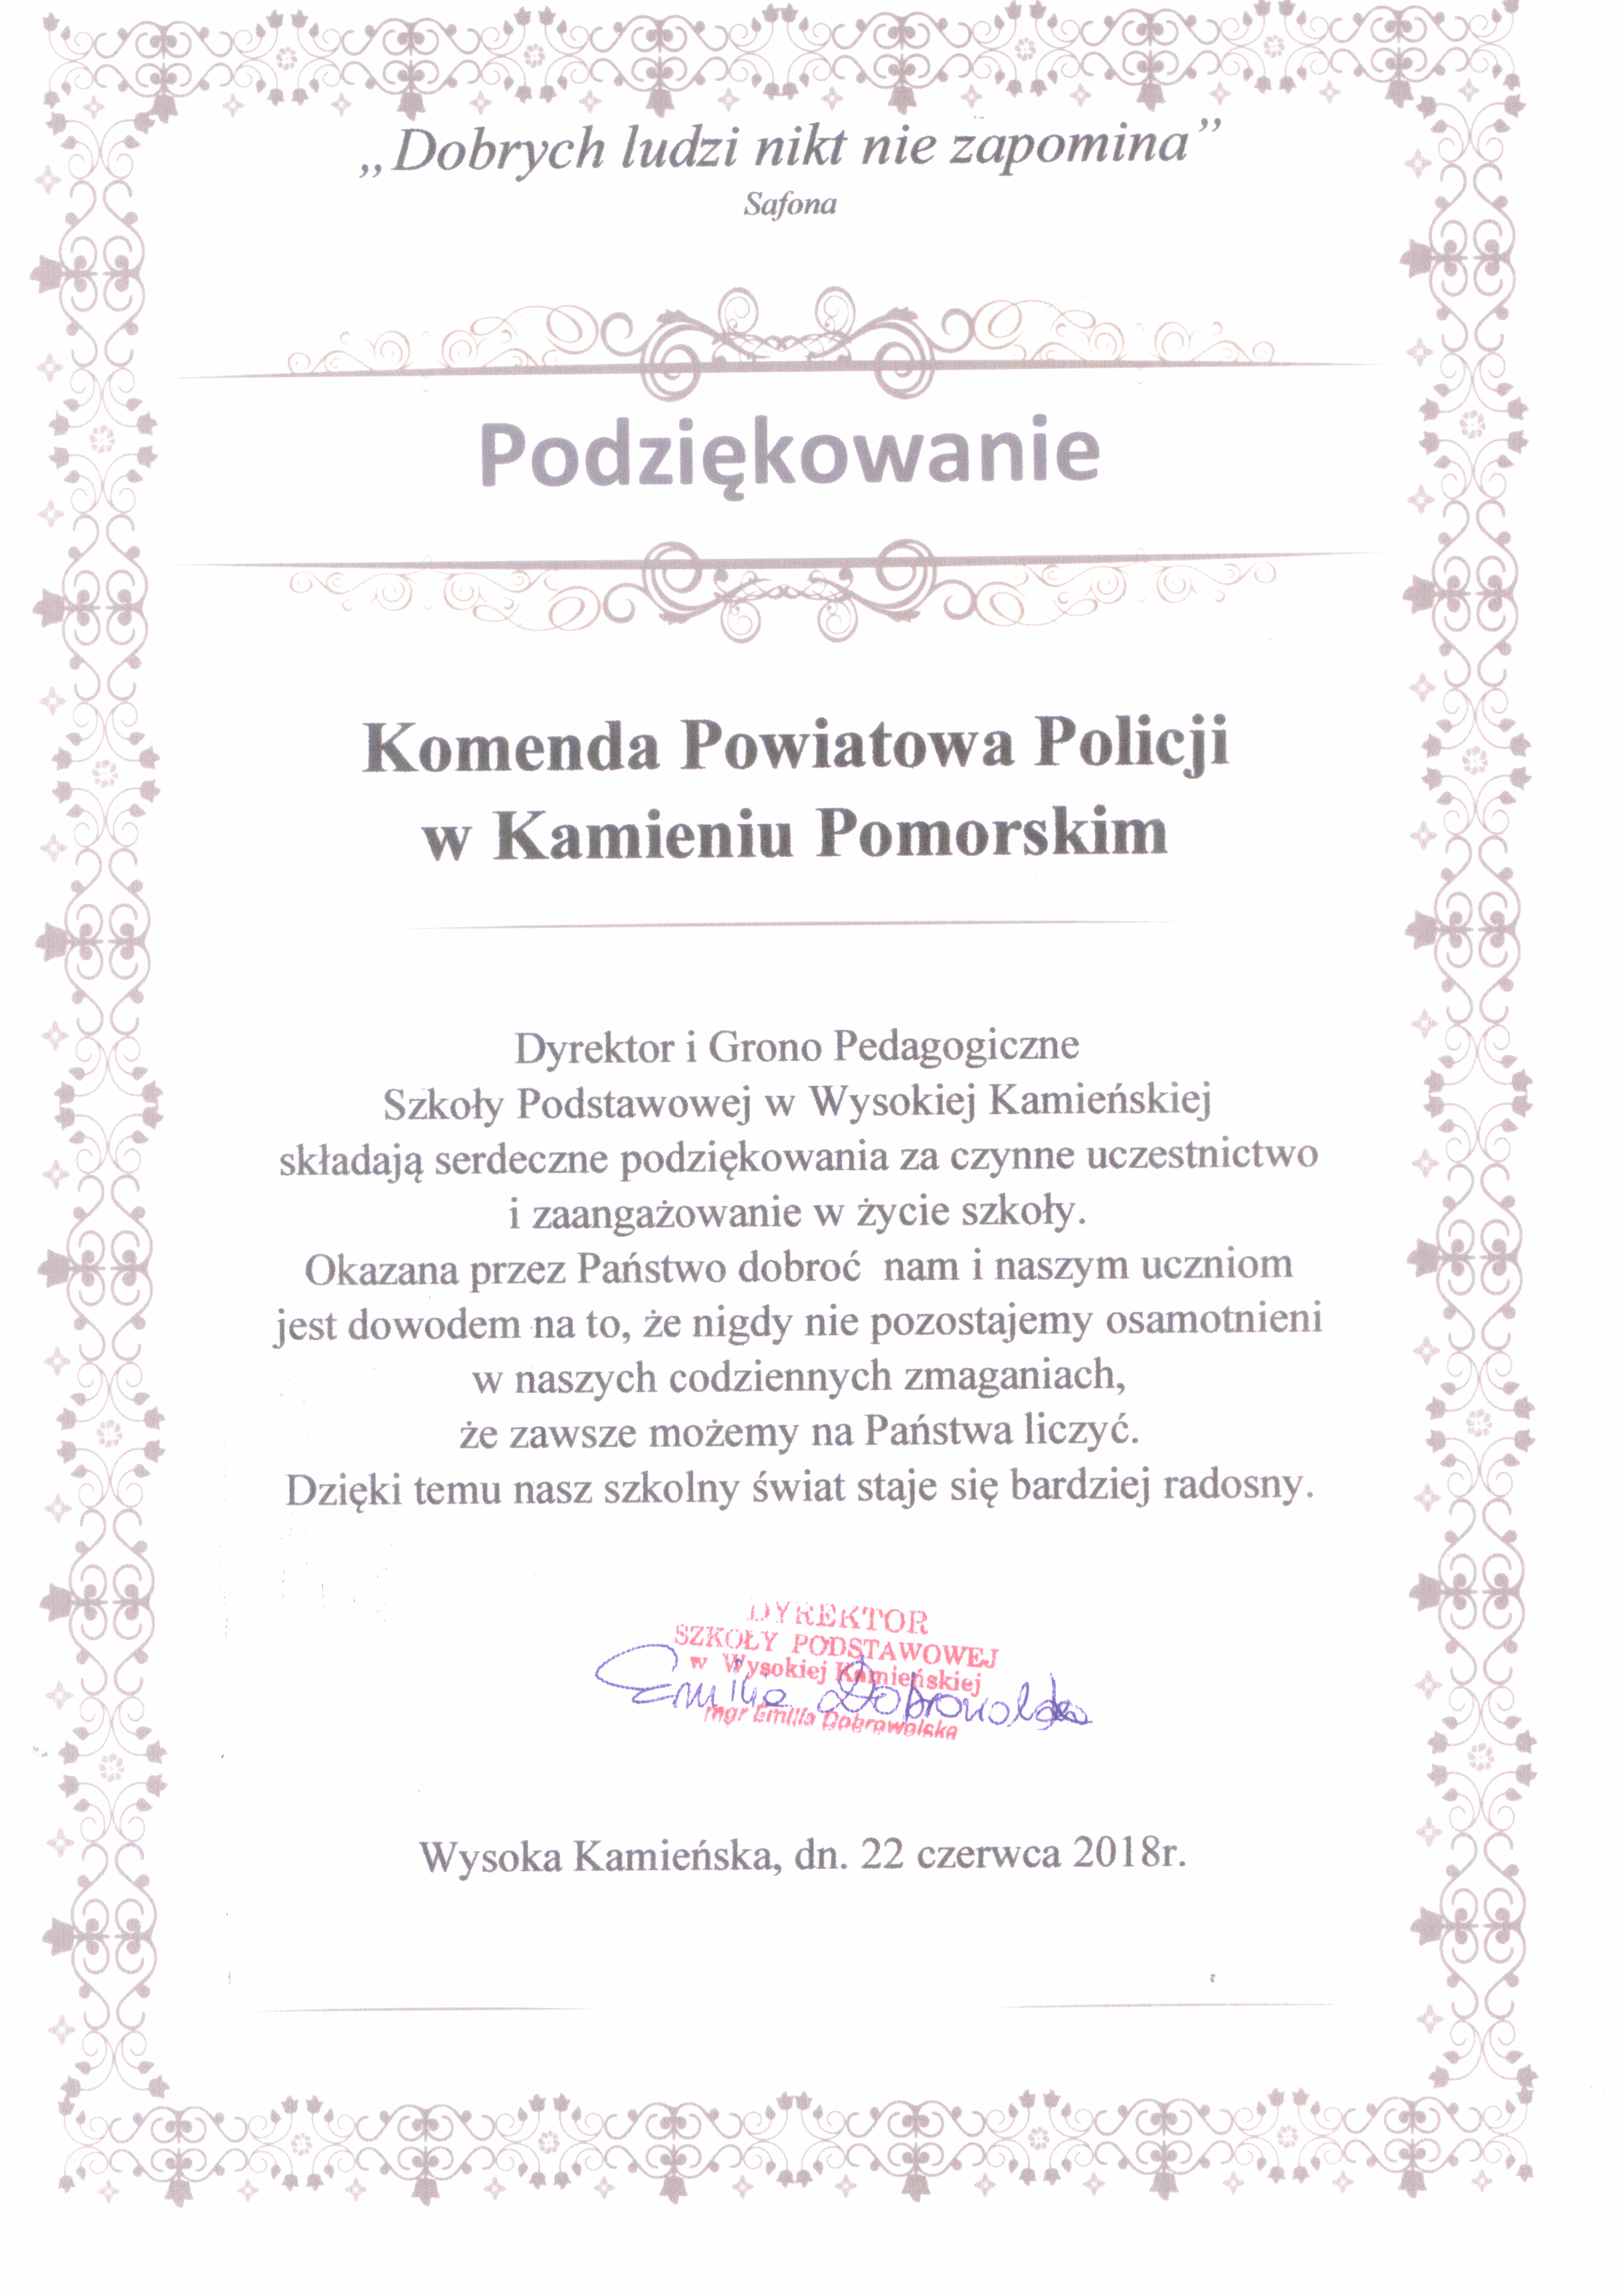 Podziękowania dla funkcjonariuszy Komendy Powiatowej Policji w Kamieniu Pomorskim